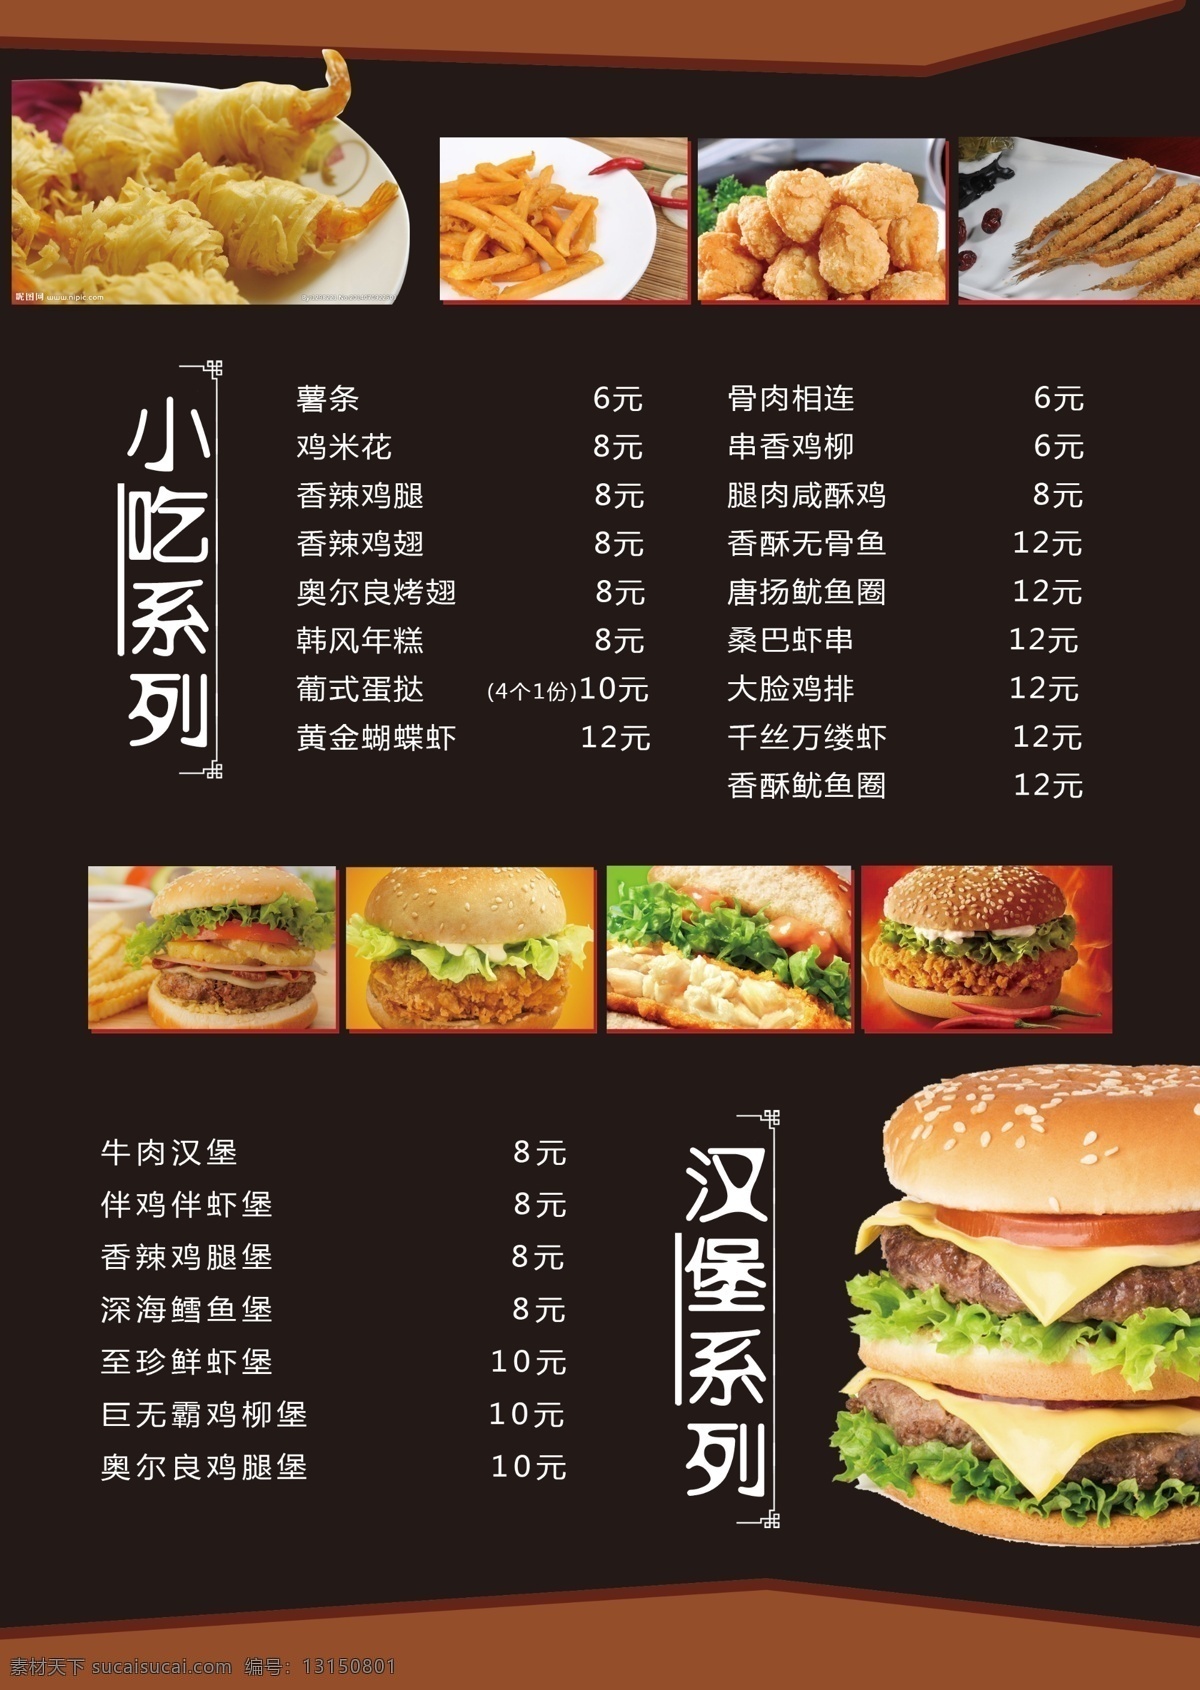 酒水单 汉堡系列 小吃系列 薯条 鸡米花 蛋挞 菜单菜谱